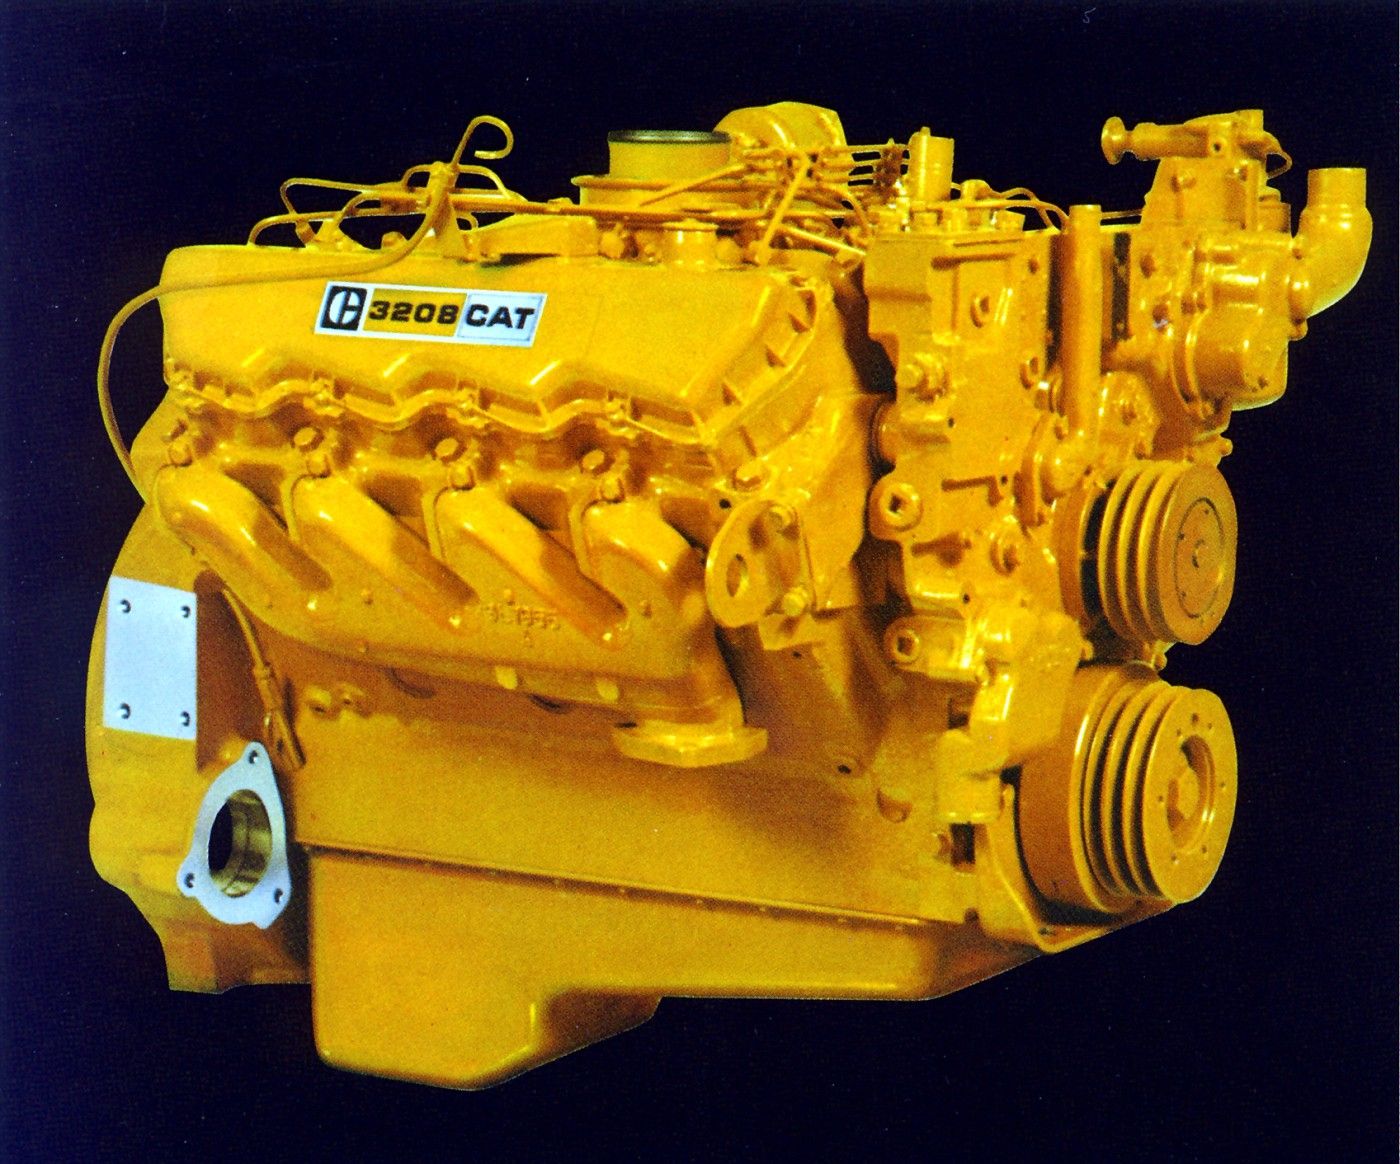 Двигатель сат. Катерпиллер 3208 двигатель. Caterpillar v8 engine 3208. V8 Diesel. Дизельный двигатель Caterpillar.